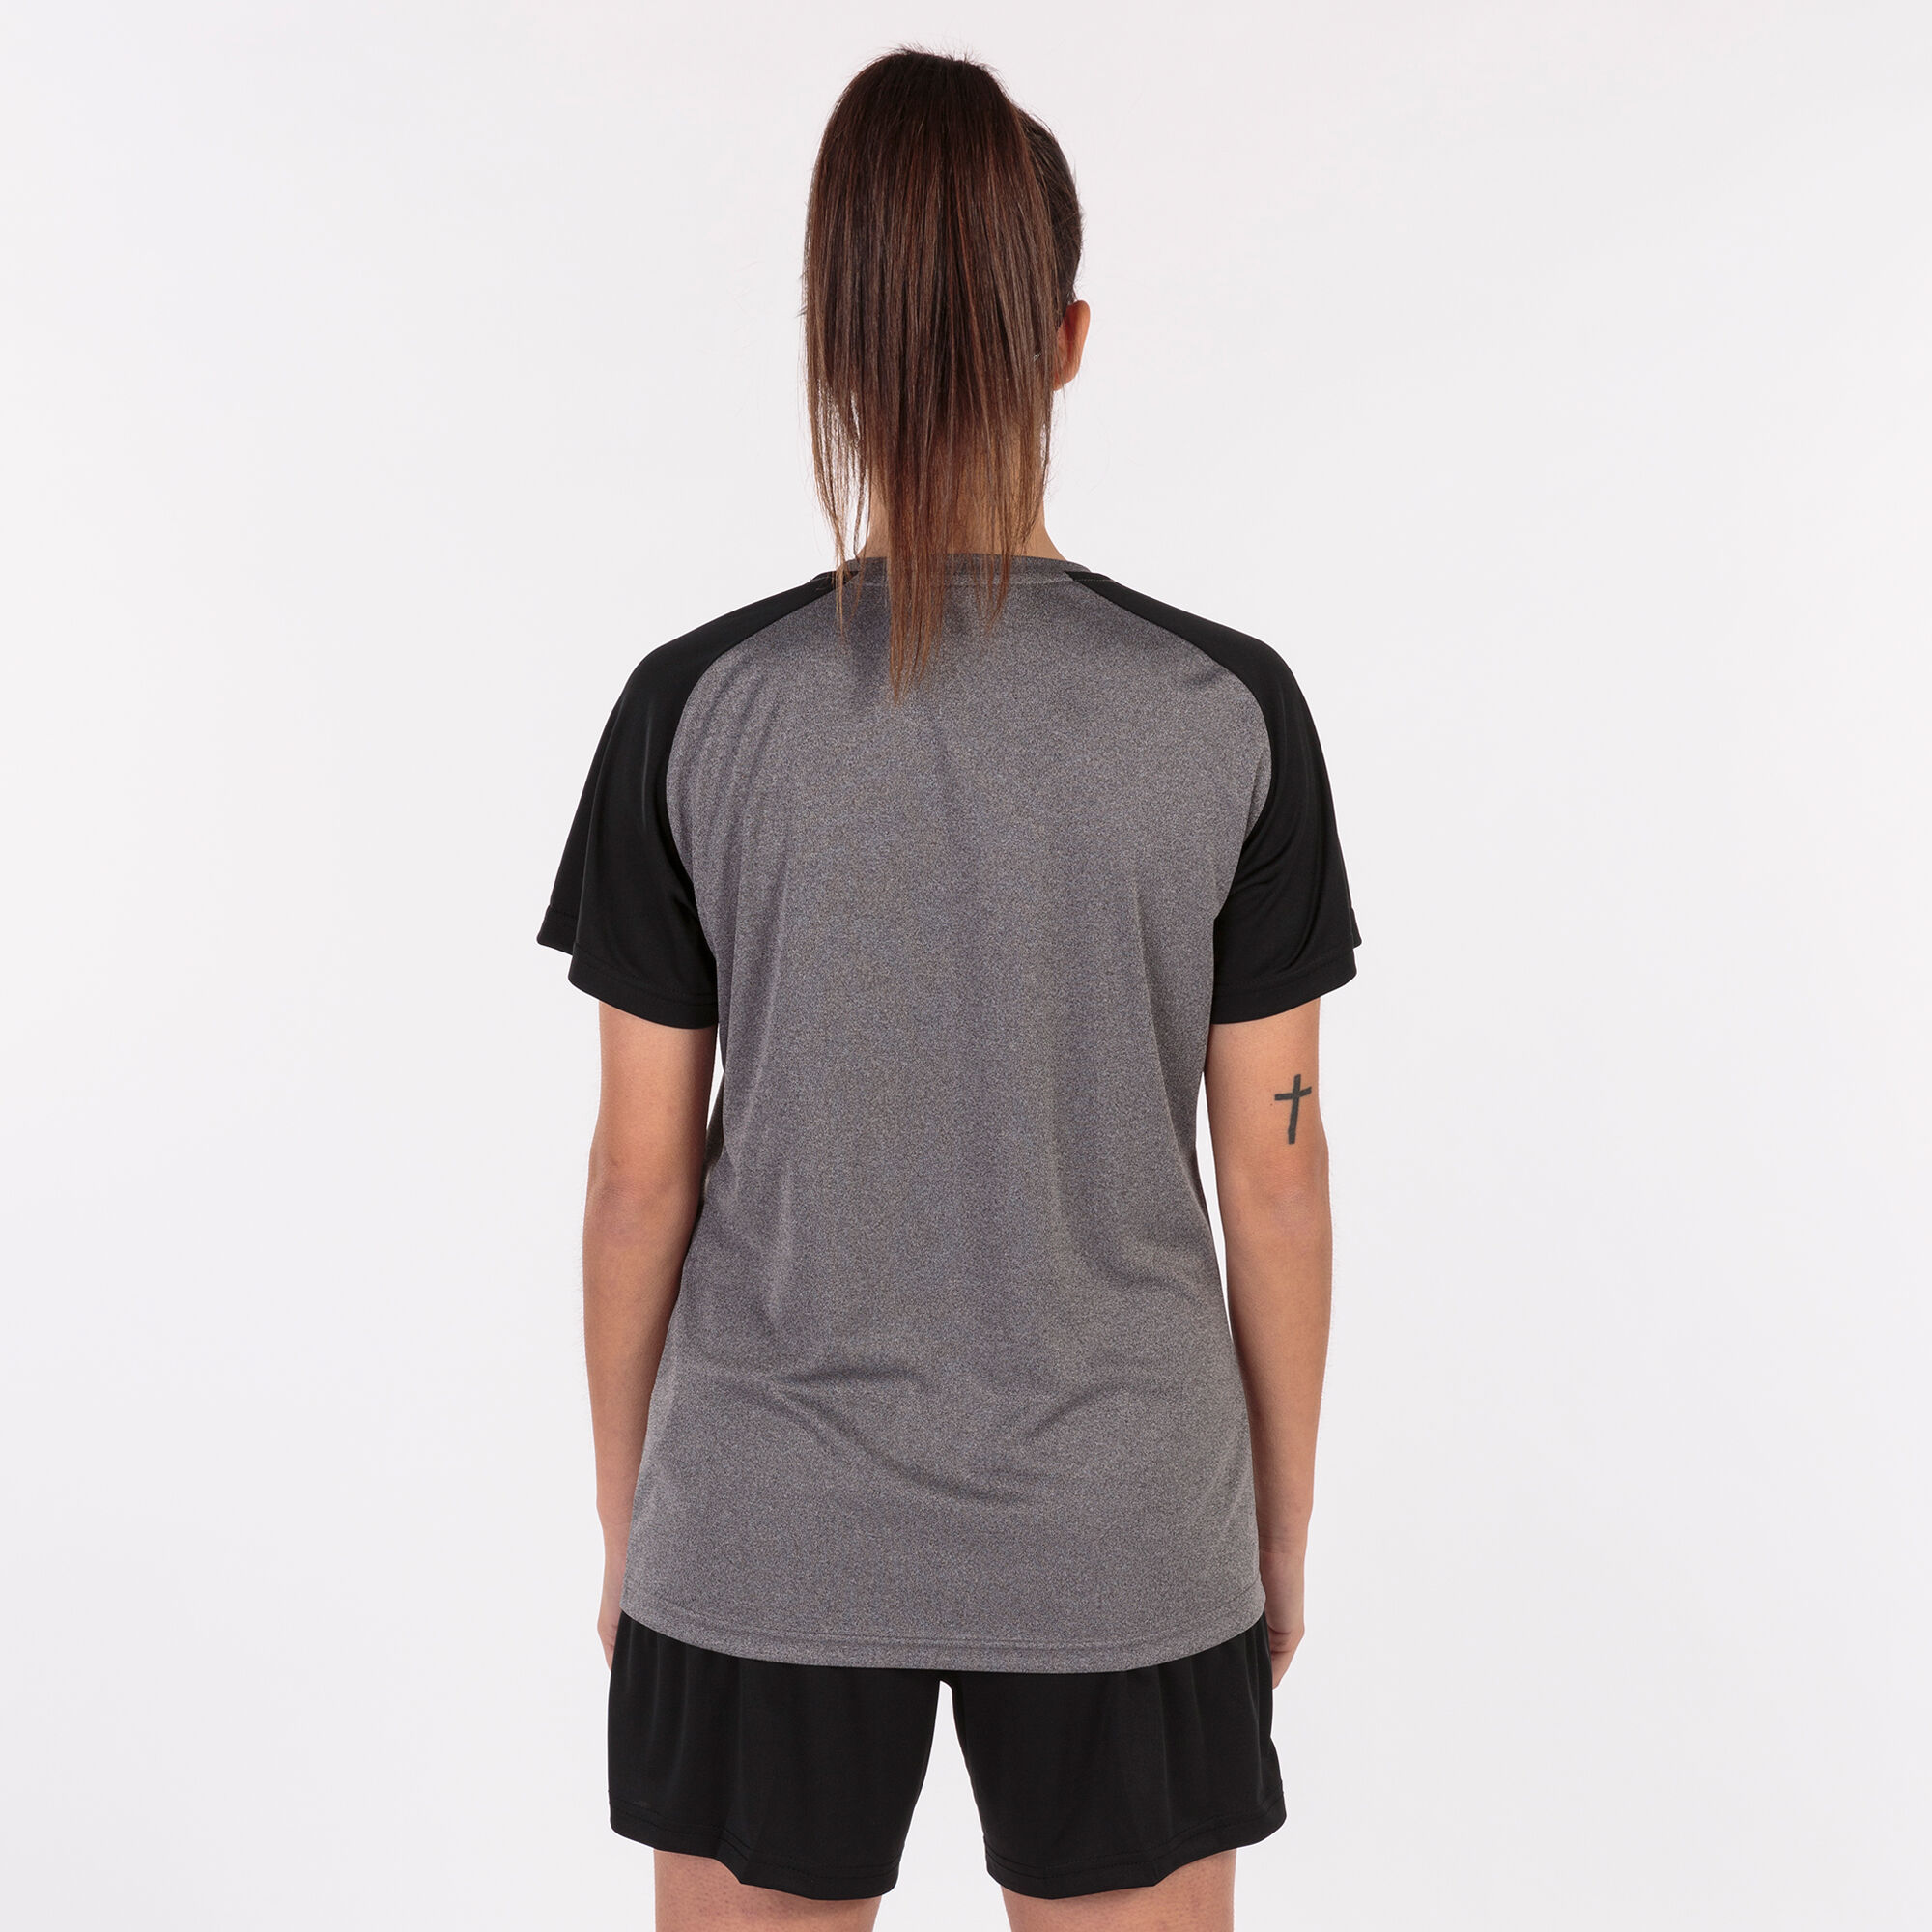 Camiseta manga corta mujer Academy IV gris melange negro